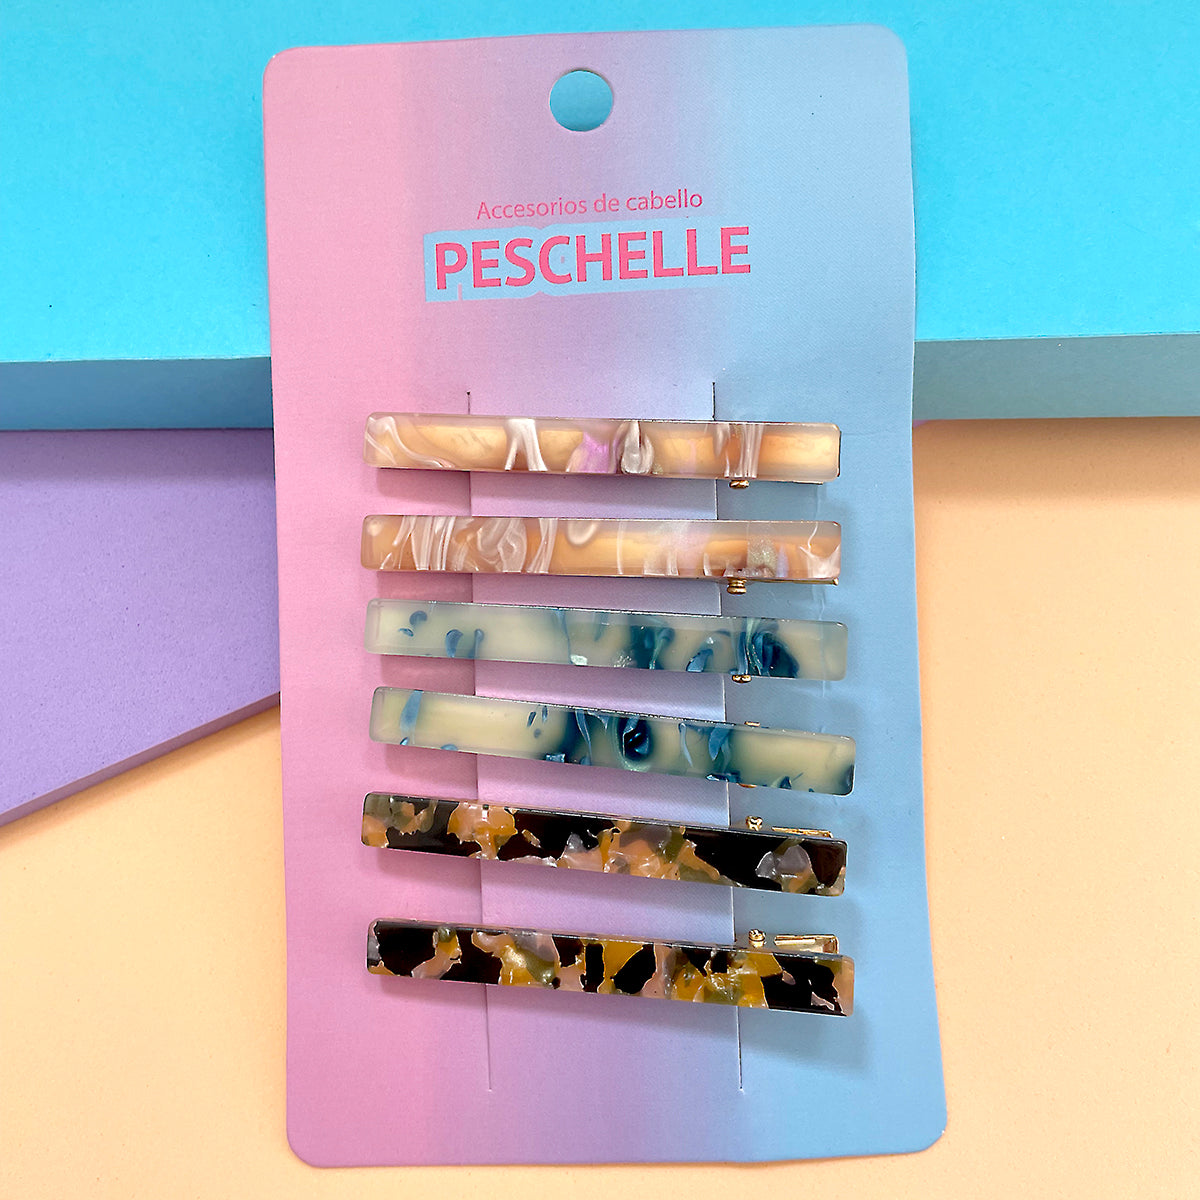 Set de 6 broches para el cabello Peschelle multicolor